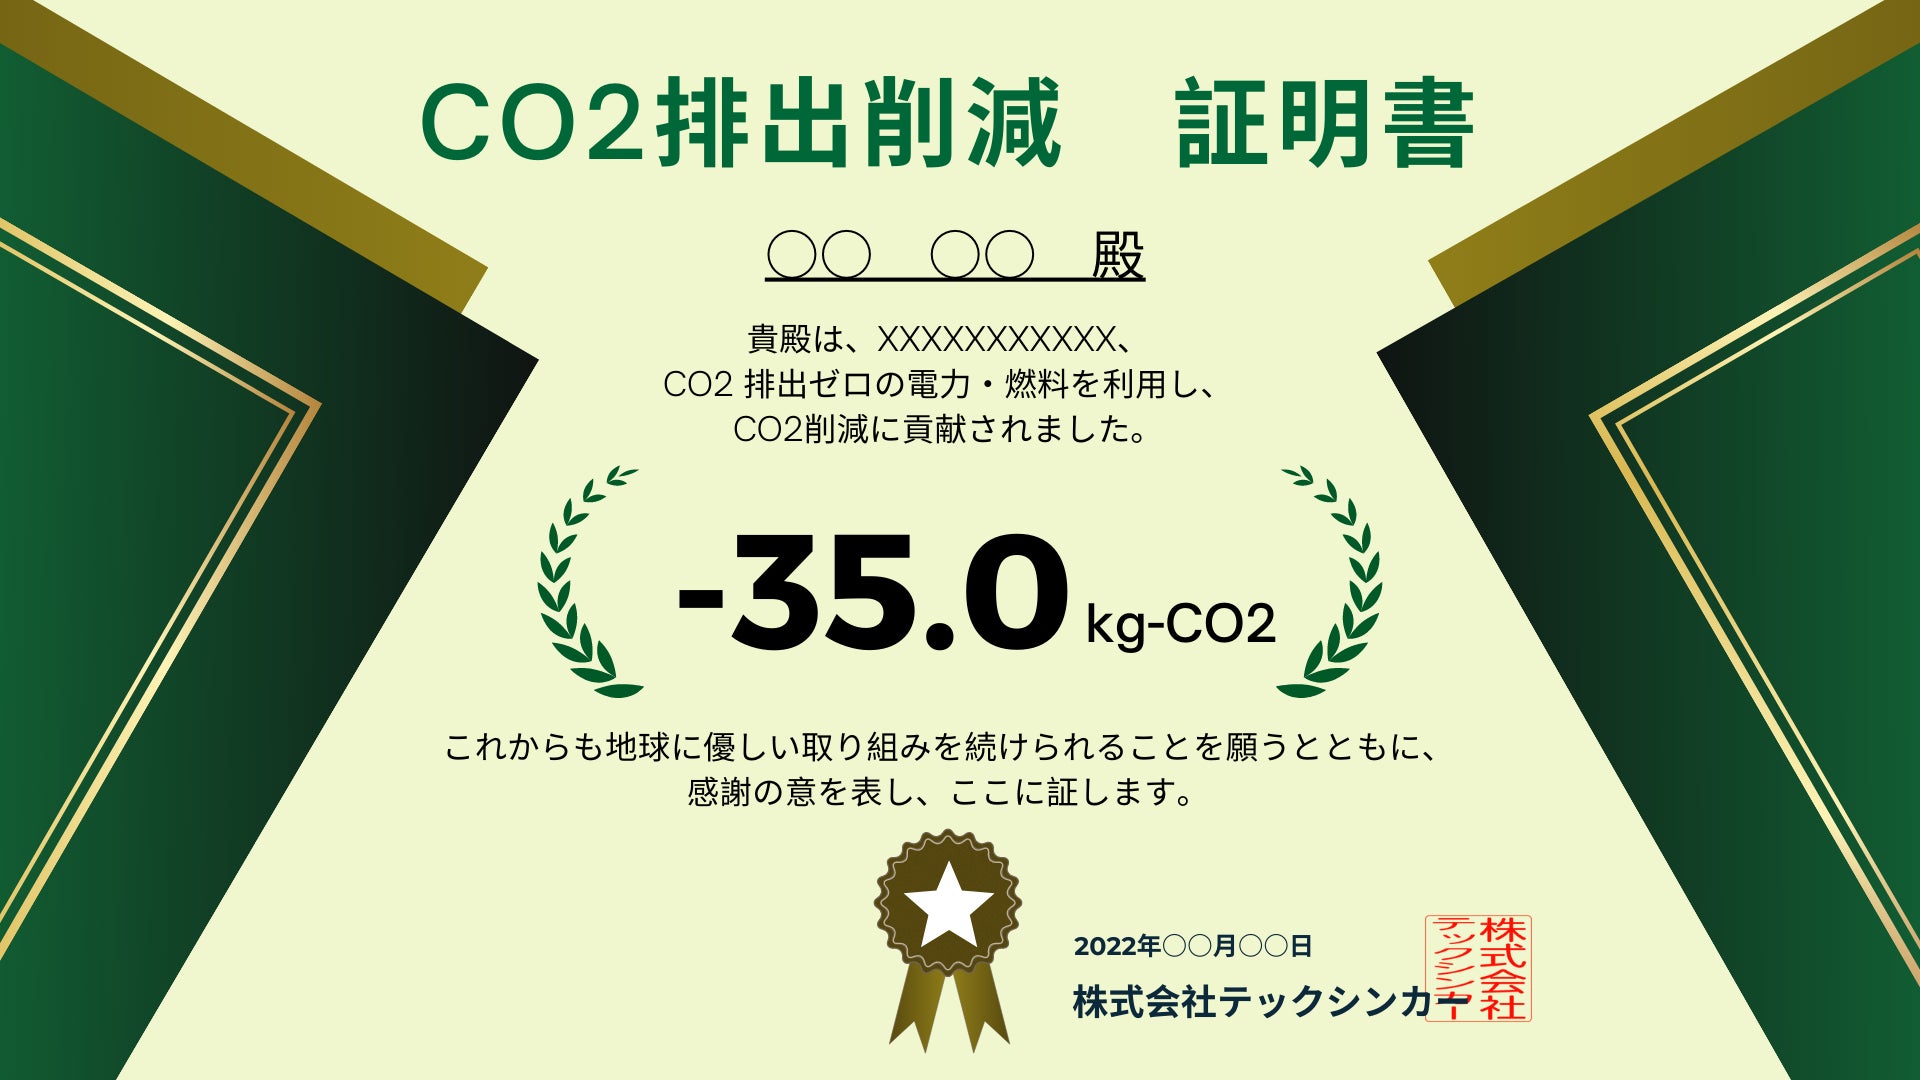 CO2排出量ゼロ電力・燃料の導入について、利用者の購買行動による貢献量を明確にして効果的に発信できます！ーCO2削減貢献量の算出サービス提供開始のサブ画像4